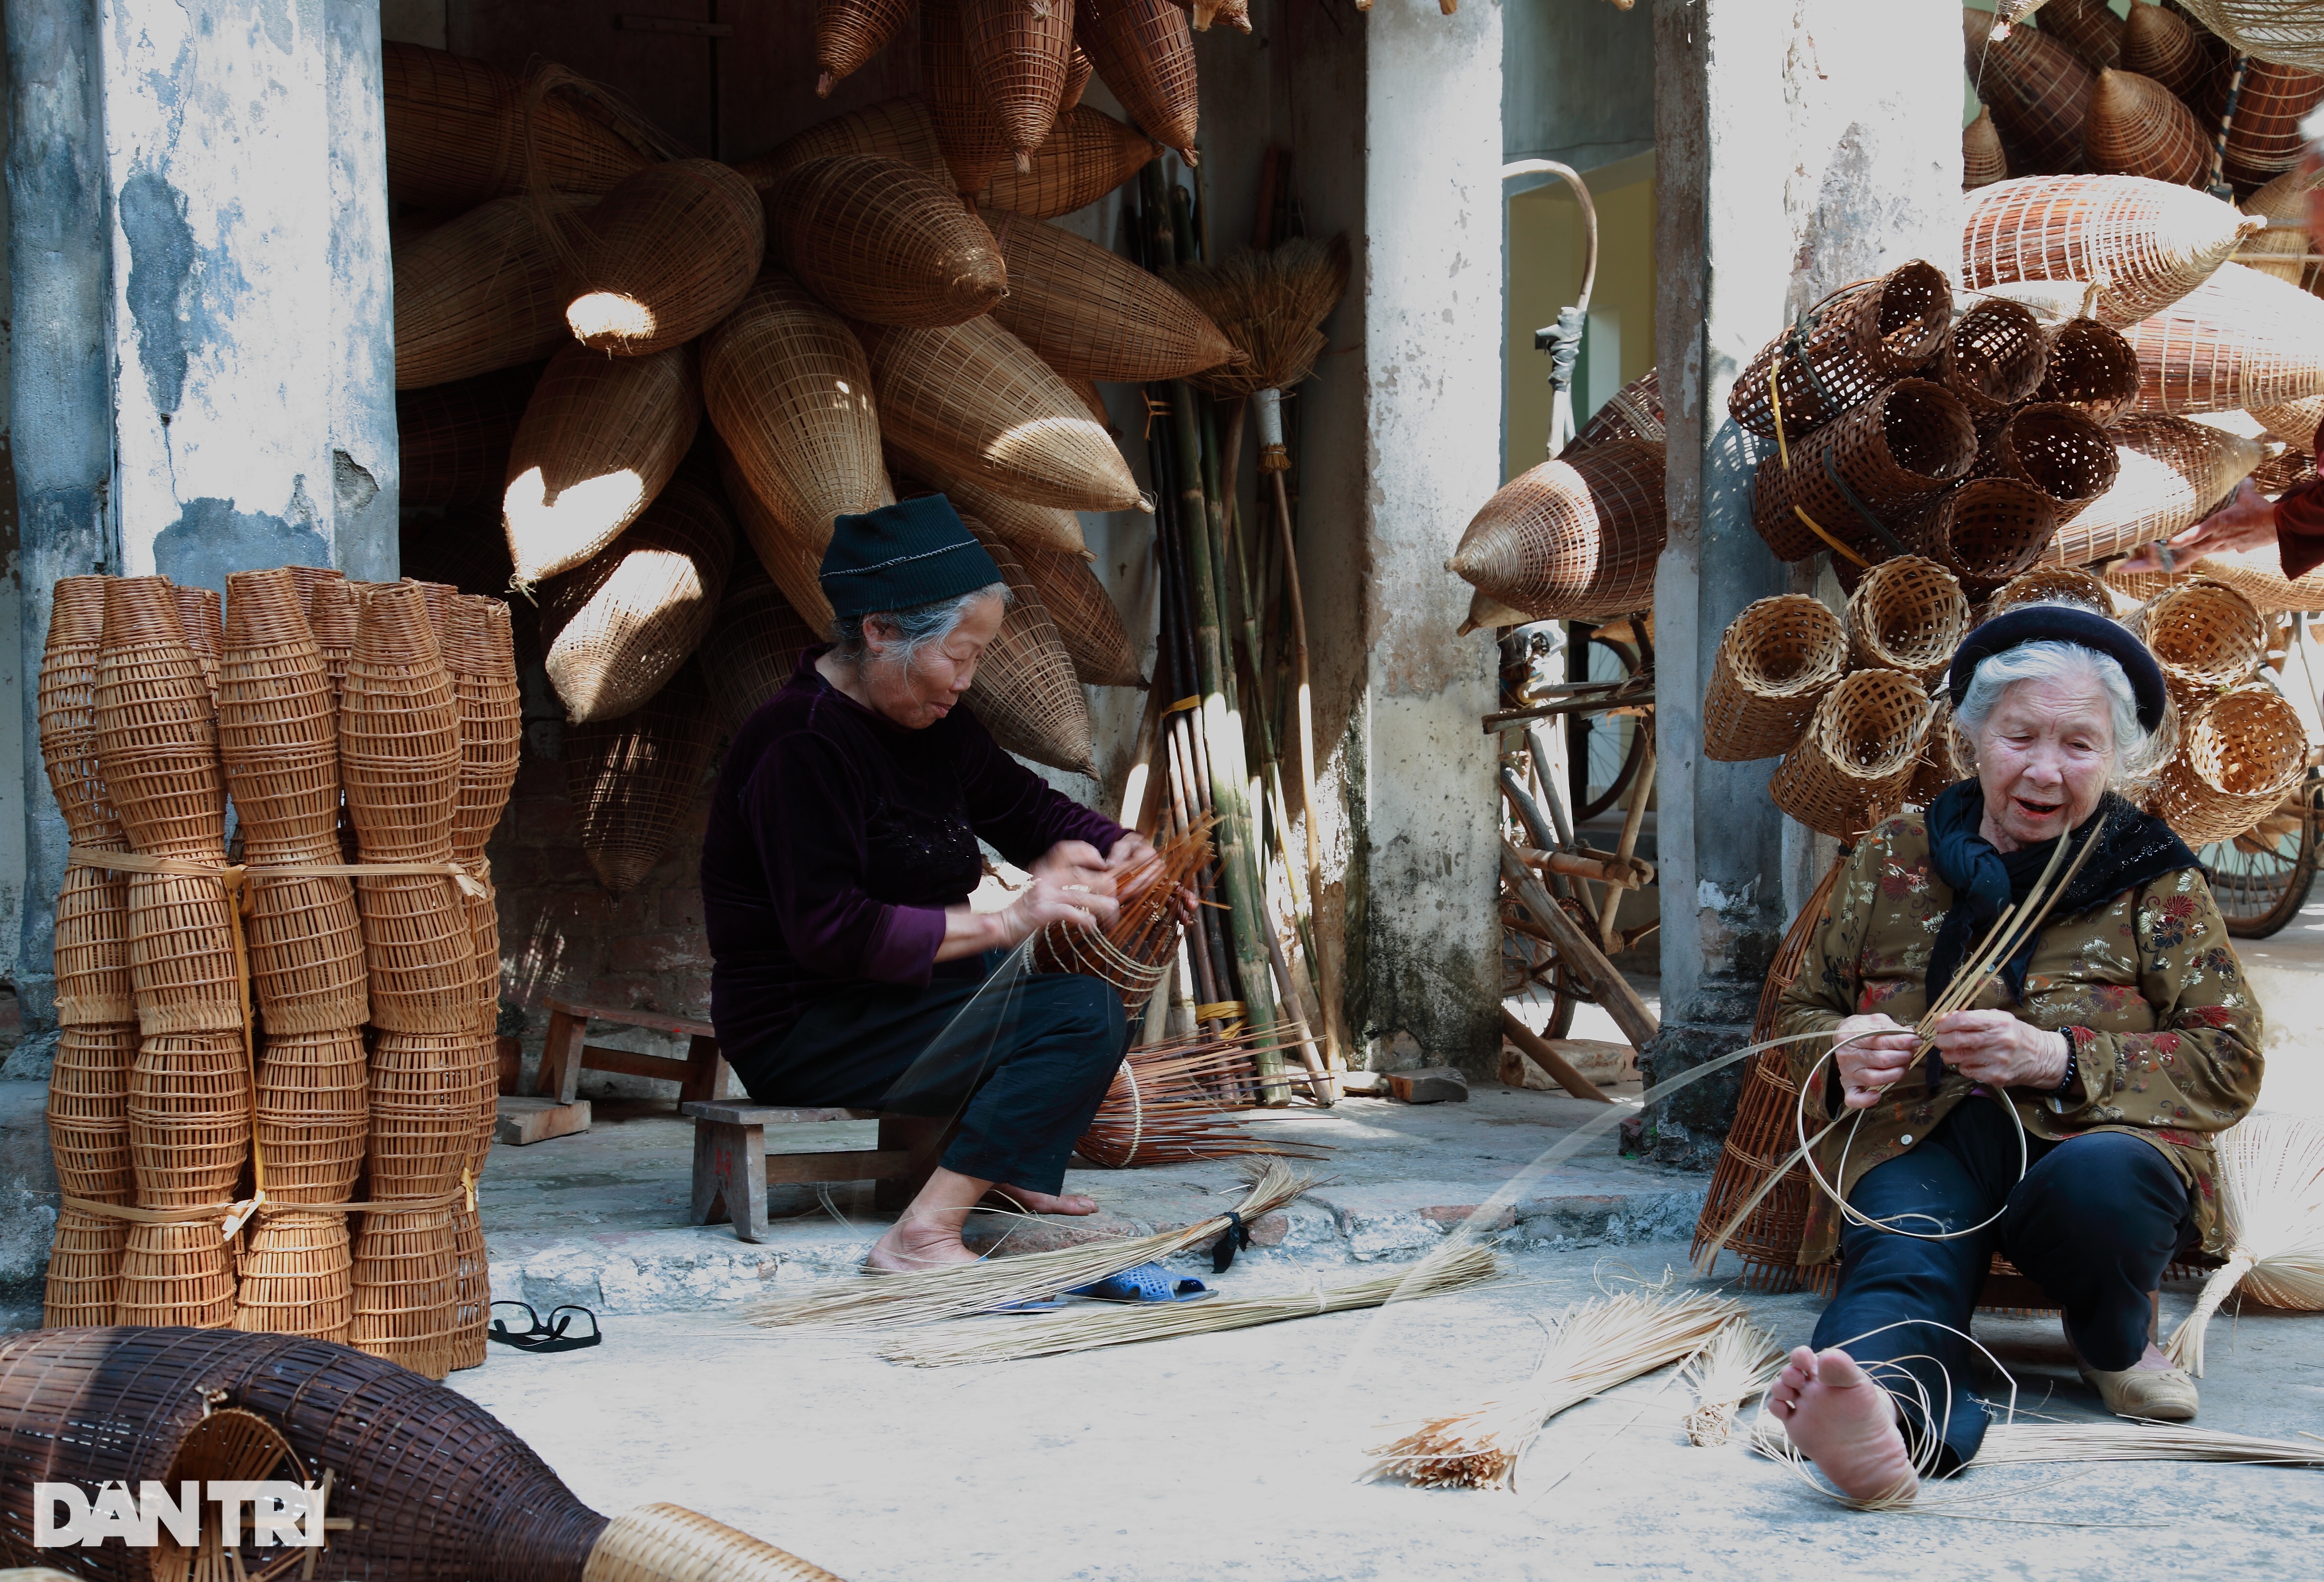 Làng nghề đan đó 200 năm tuổi đẹp như tranh - 3